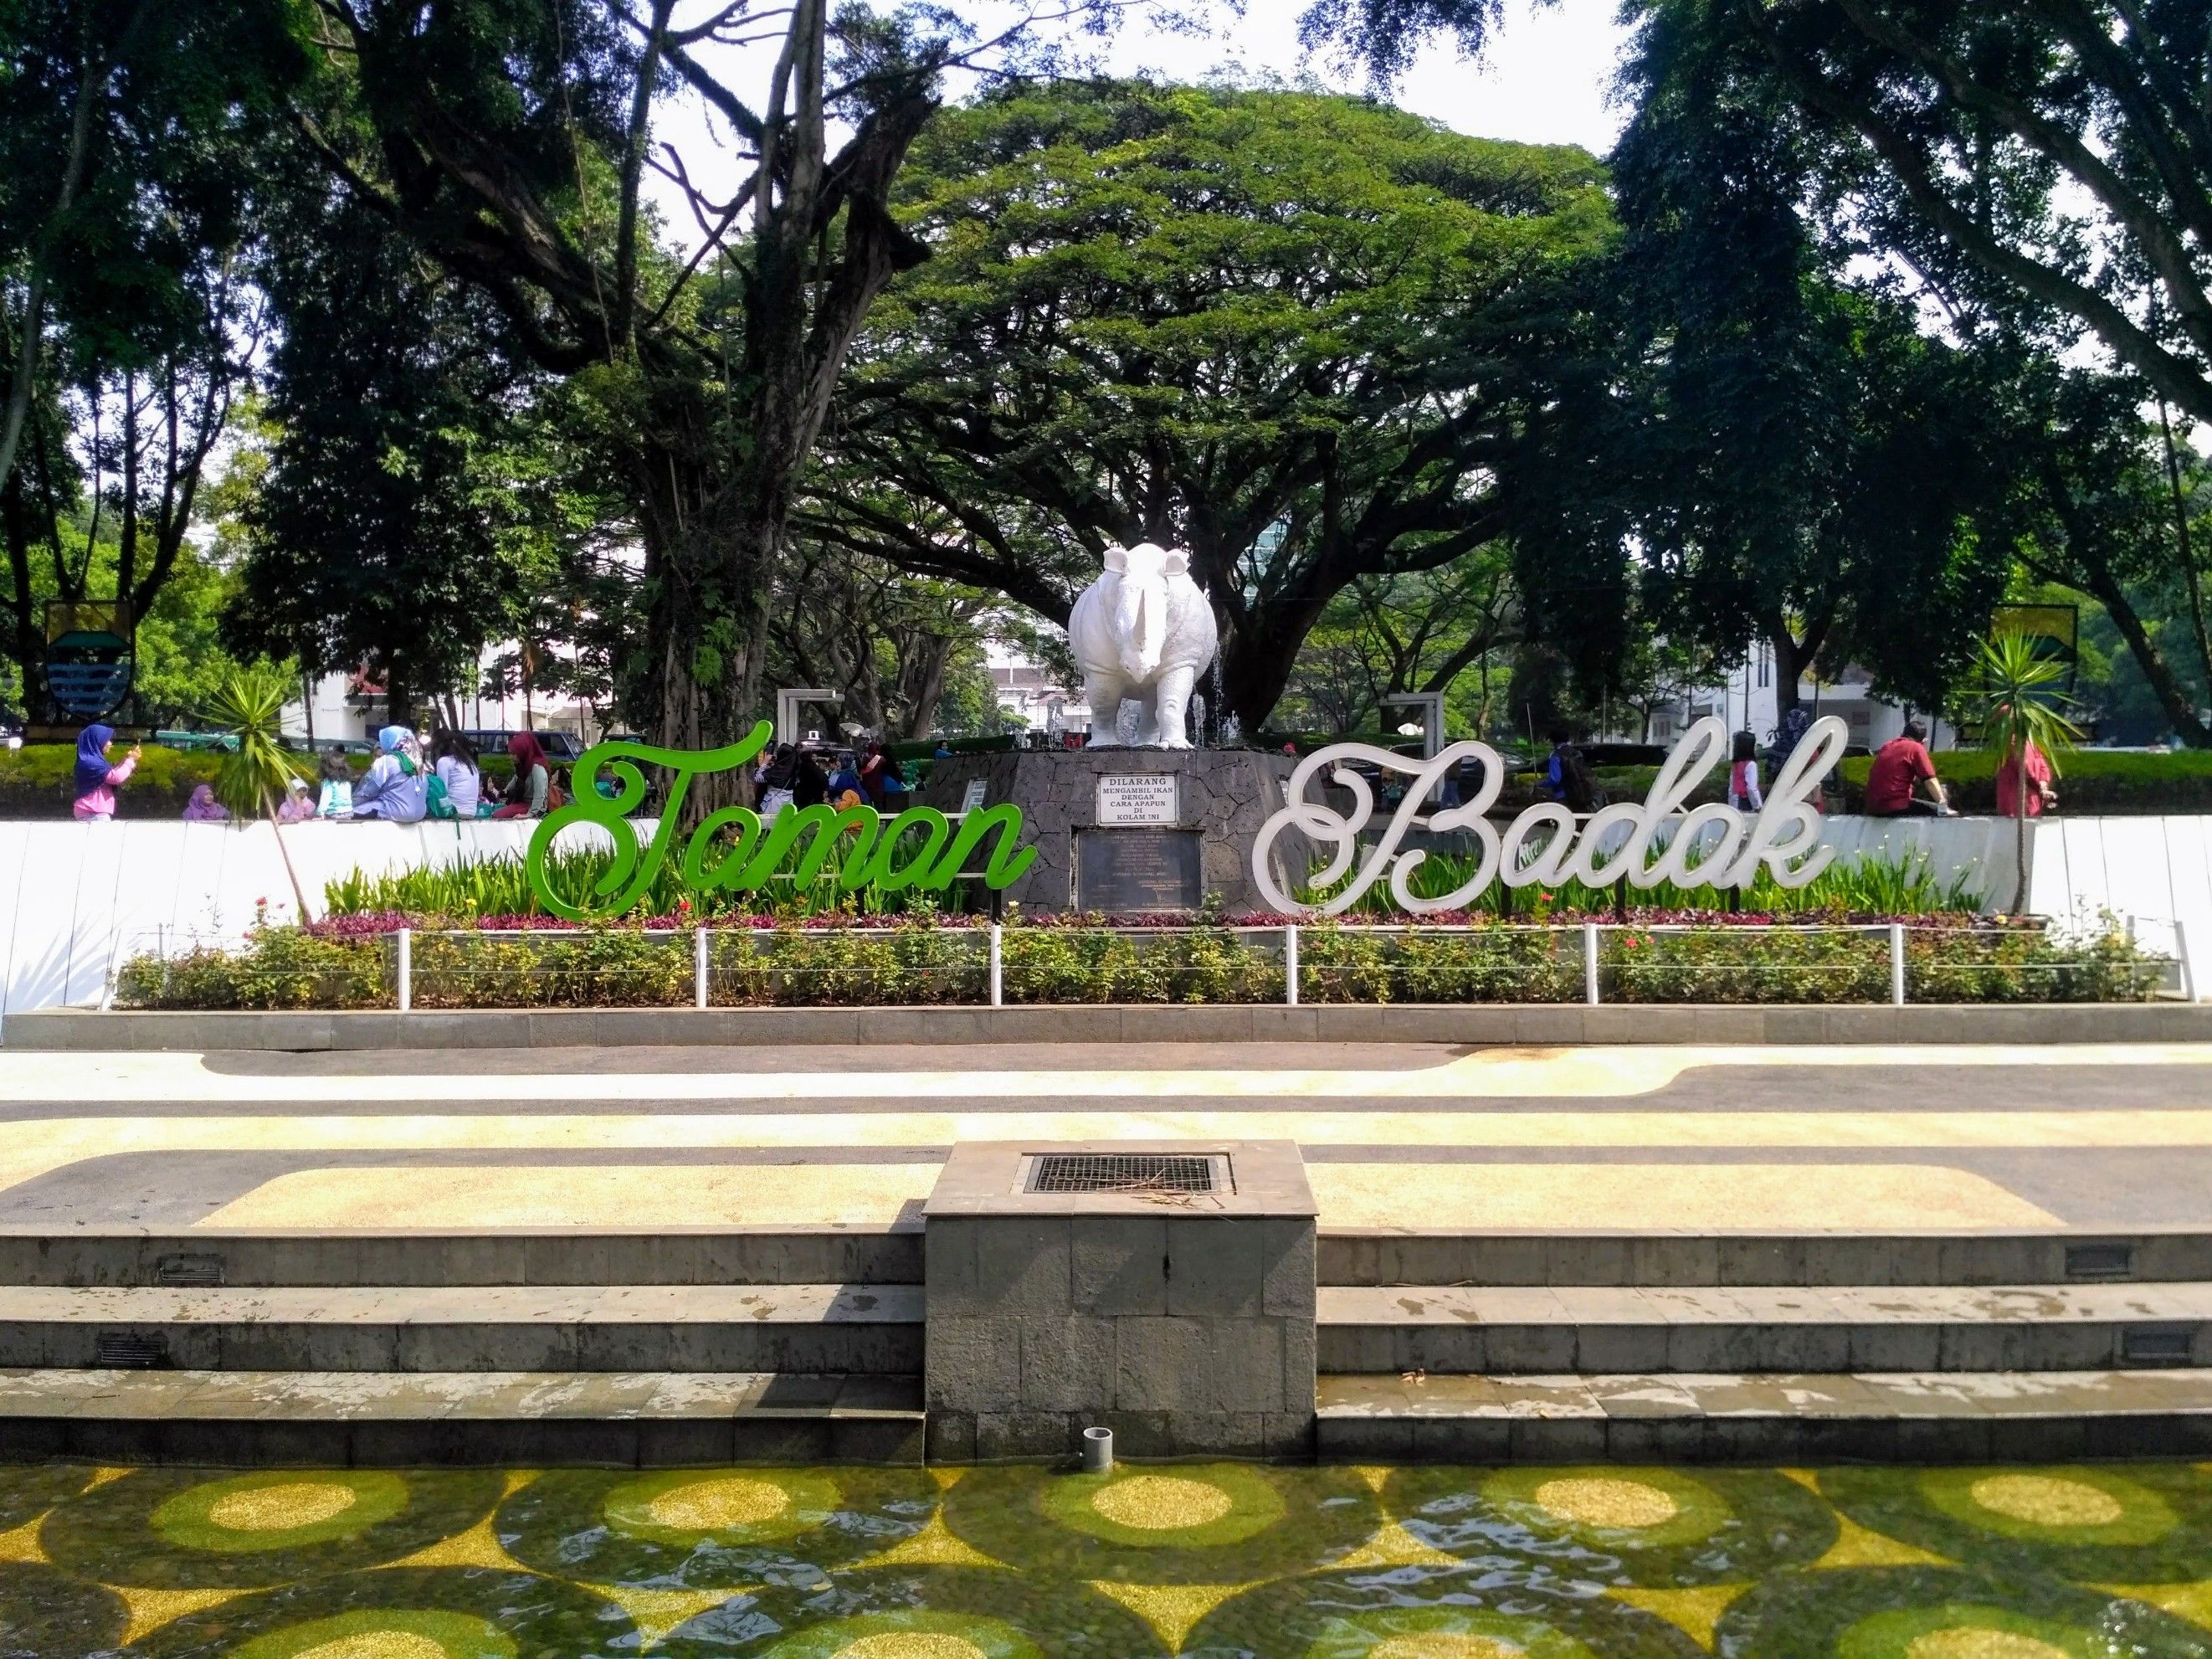 The Badak Park is an area with City Hall Park and Dewi Sartika Park